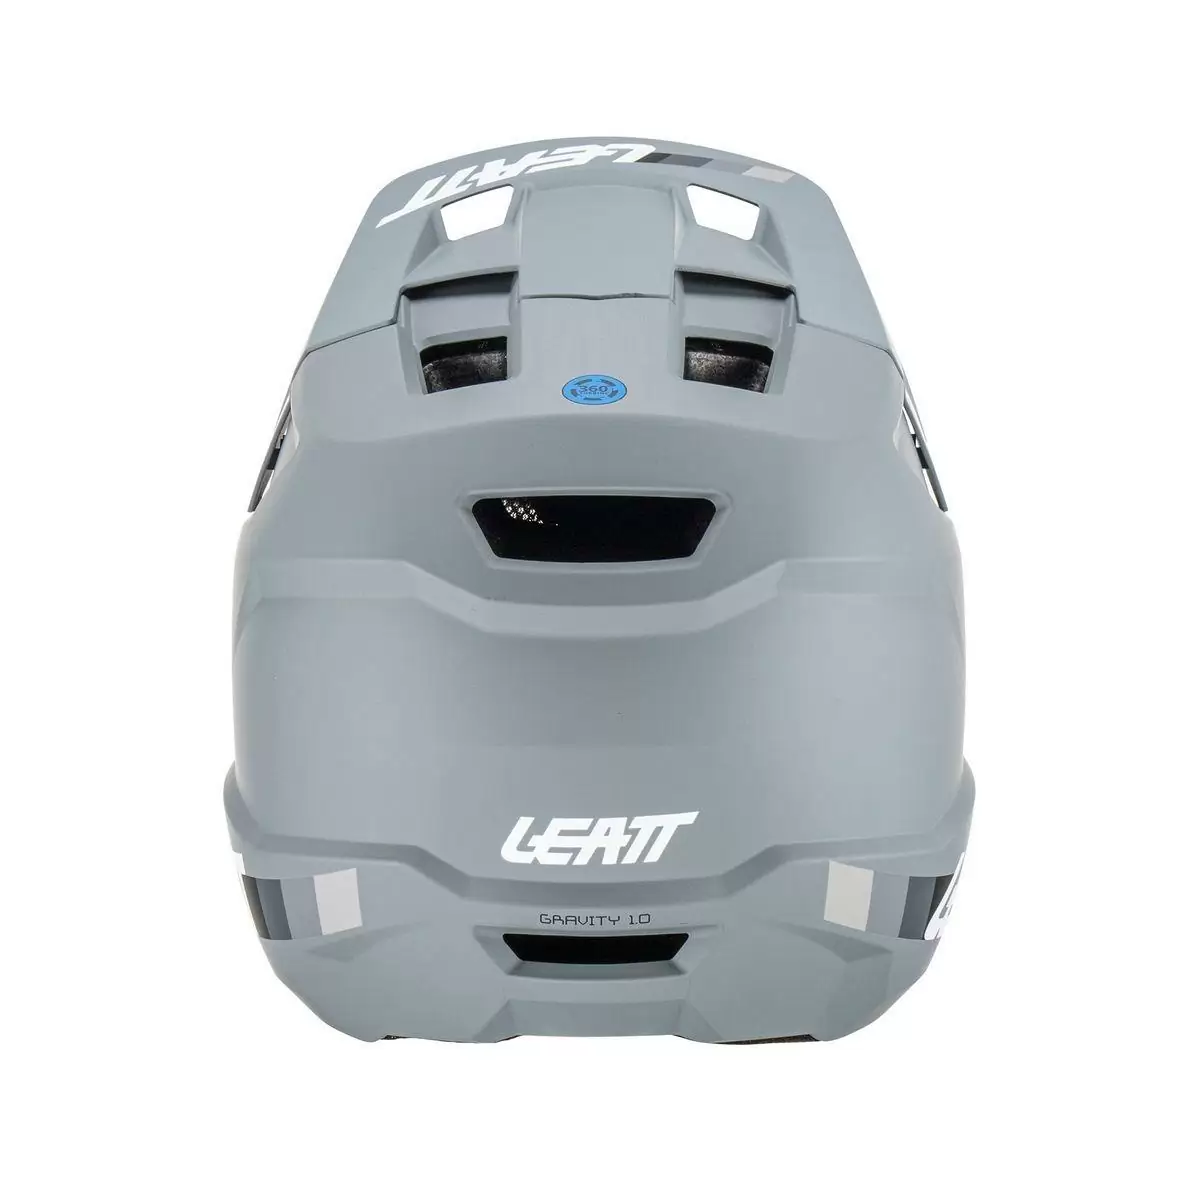 Gravity 1.0 MTB Fullface Helmet Grey Size XS (53-54cm) #4